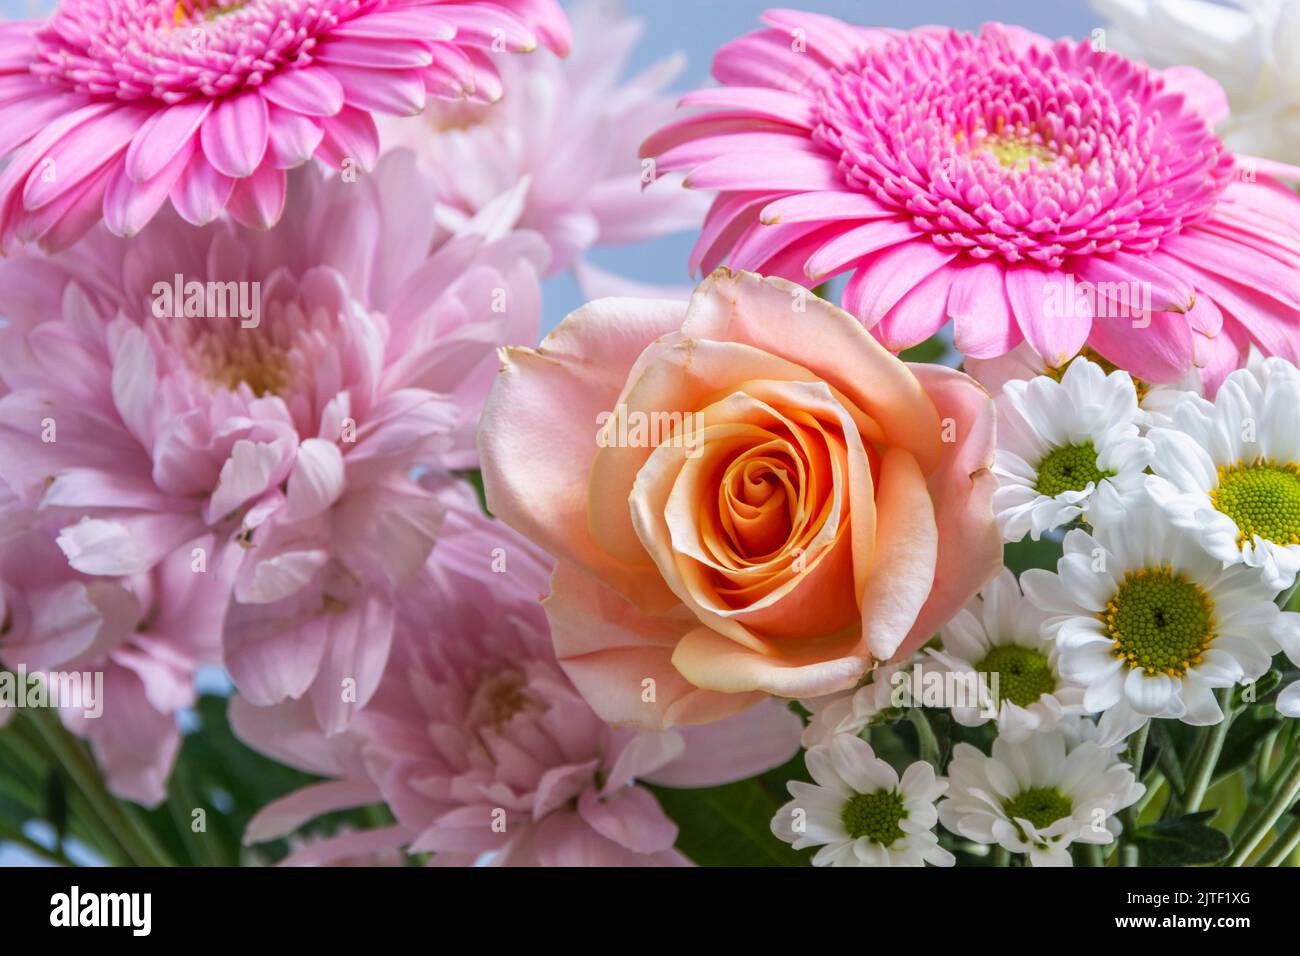 Eine einzelne Aprikosenrose in einem Blumenstrauß, der rosa Astern und Gerbera-Blüten enthält. Die Blumen sind verblassend, aber immer noch schön Stockfoto